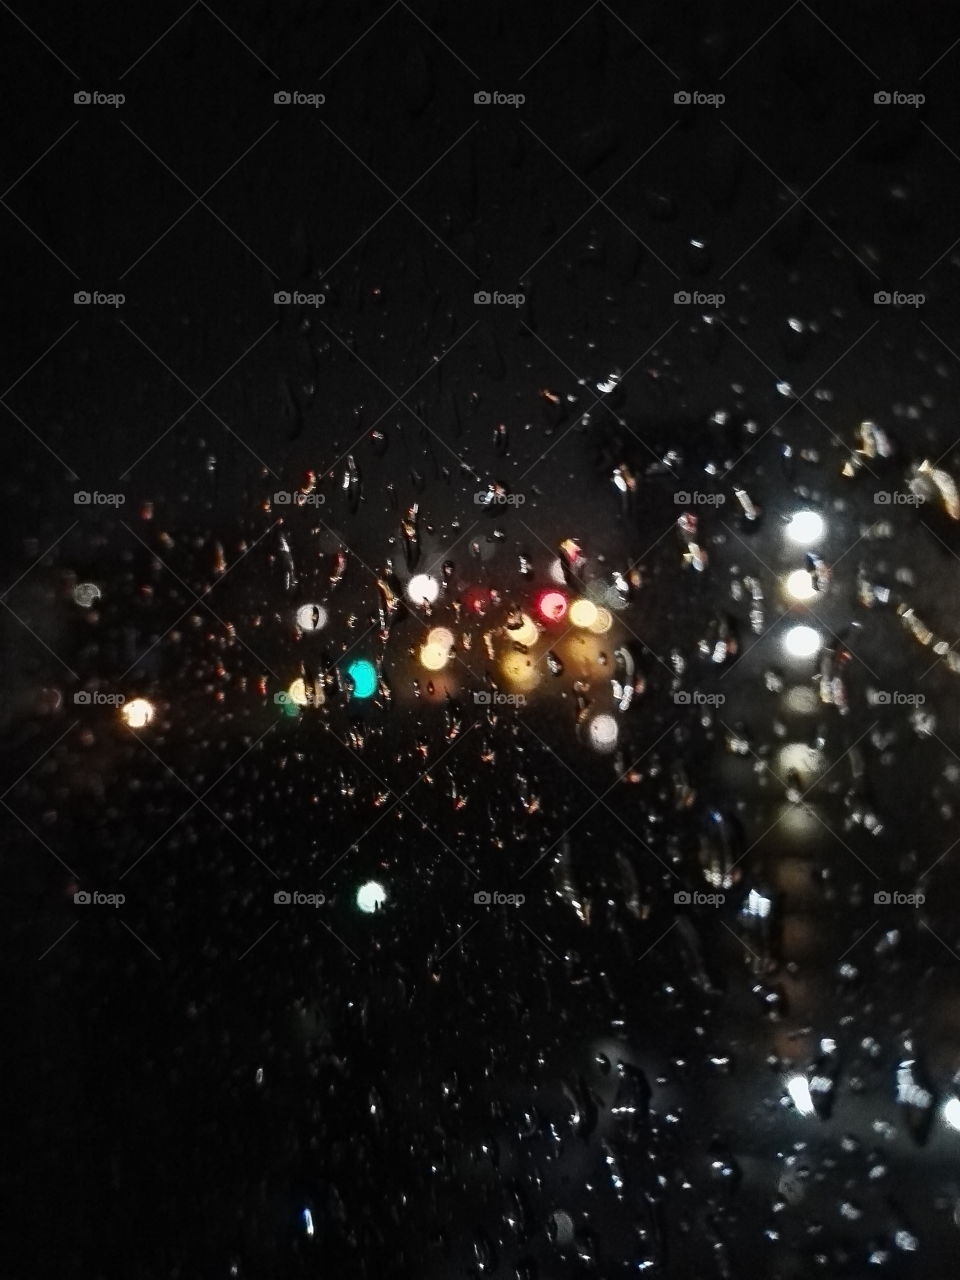 Rainy night lights